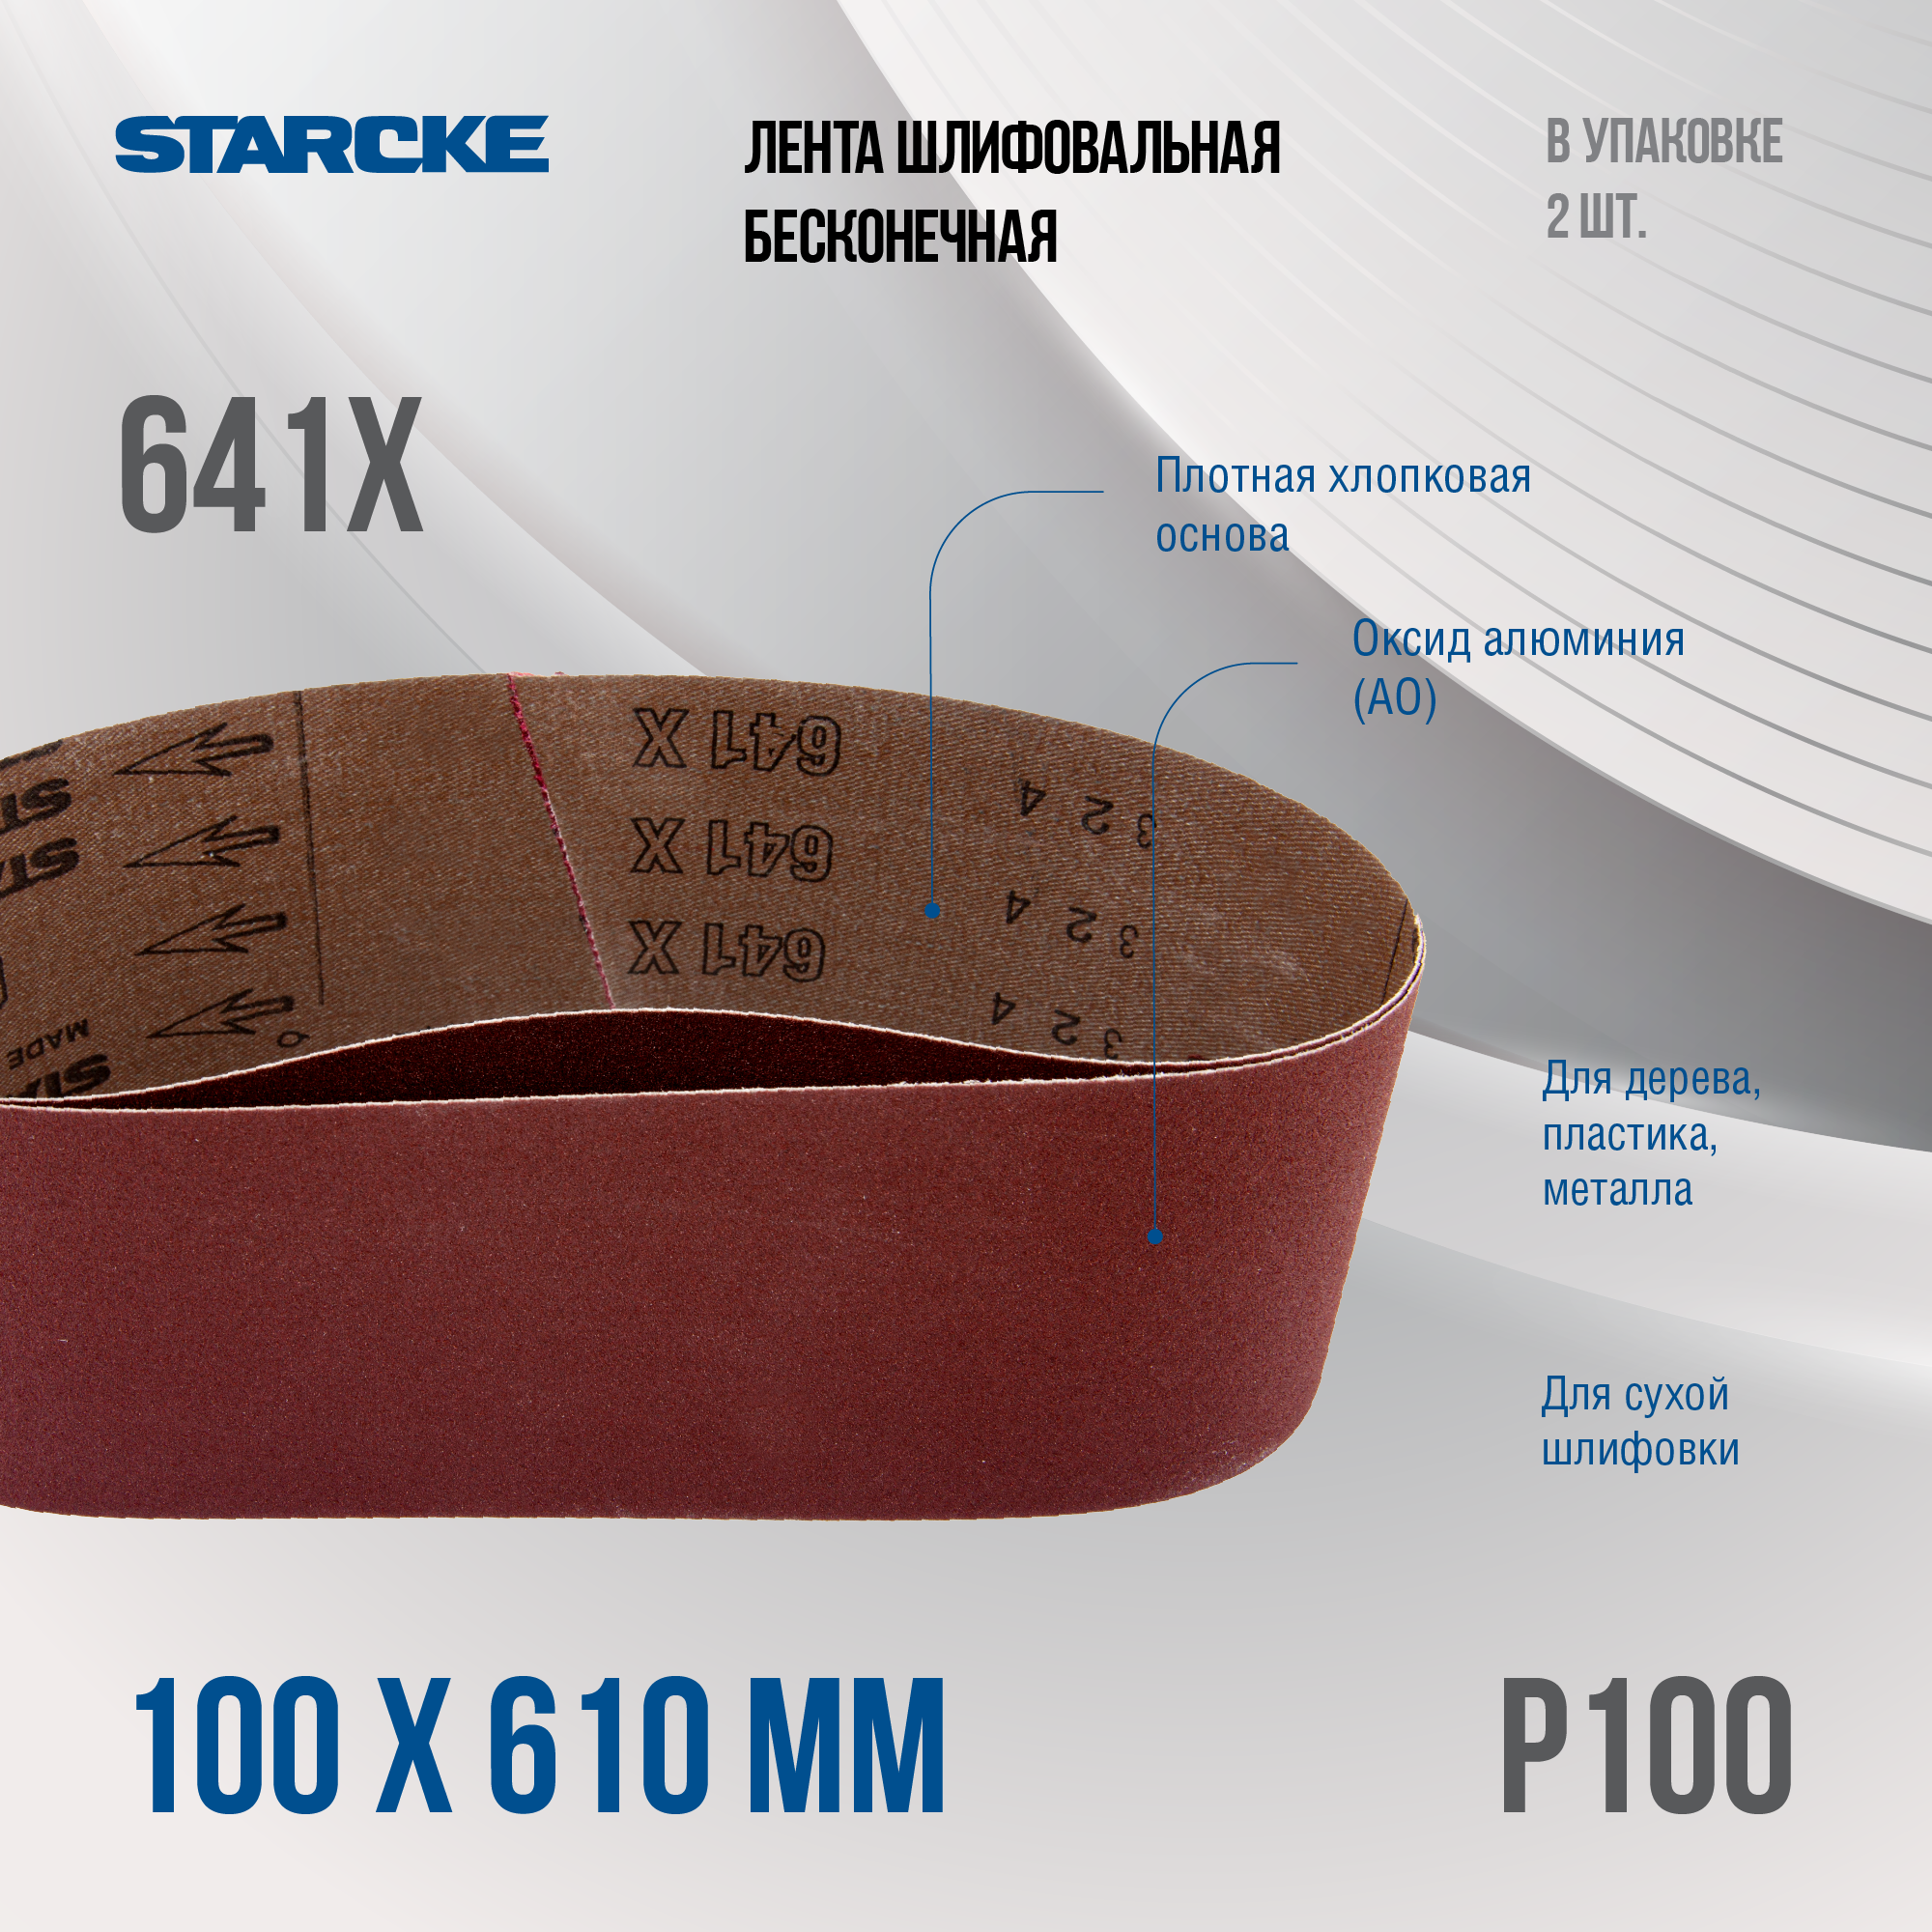 Лента шлифовальная бесконечная Starcke 641X размер 100x 610мм зерно P100 (упак 2шт.)